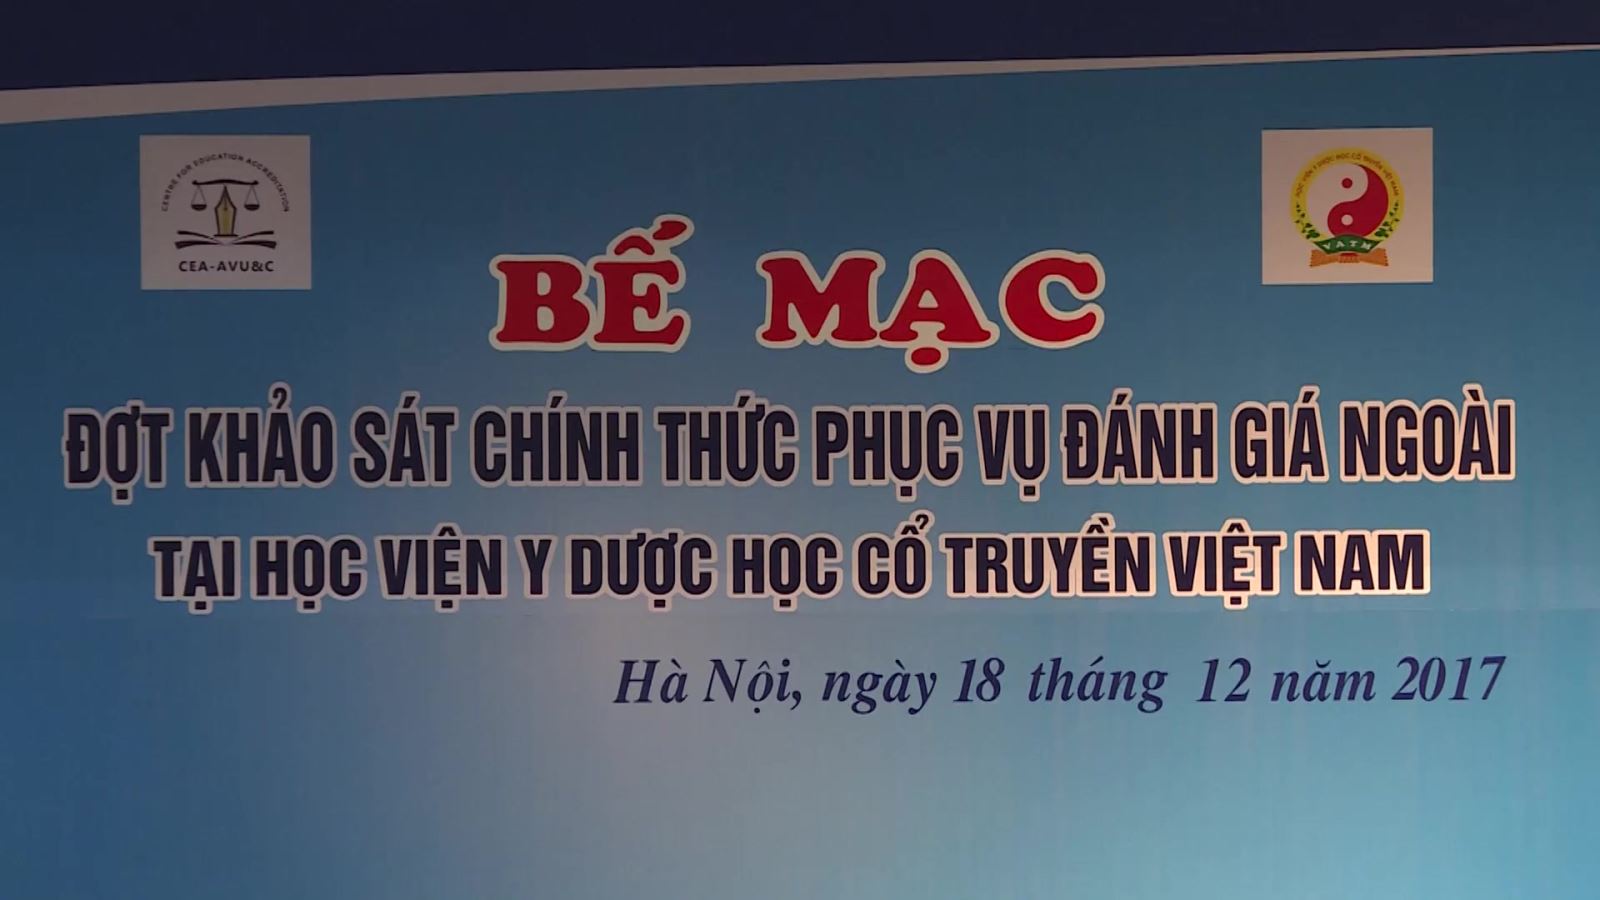 Lễ bế mạc đợt khảo sát chính thức phục vụ đánh giá ngoài (ĐGN) tại Học viện Y Dược học cổ truyền Việt Nam